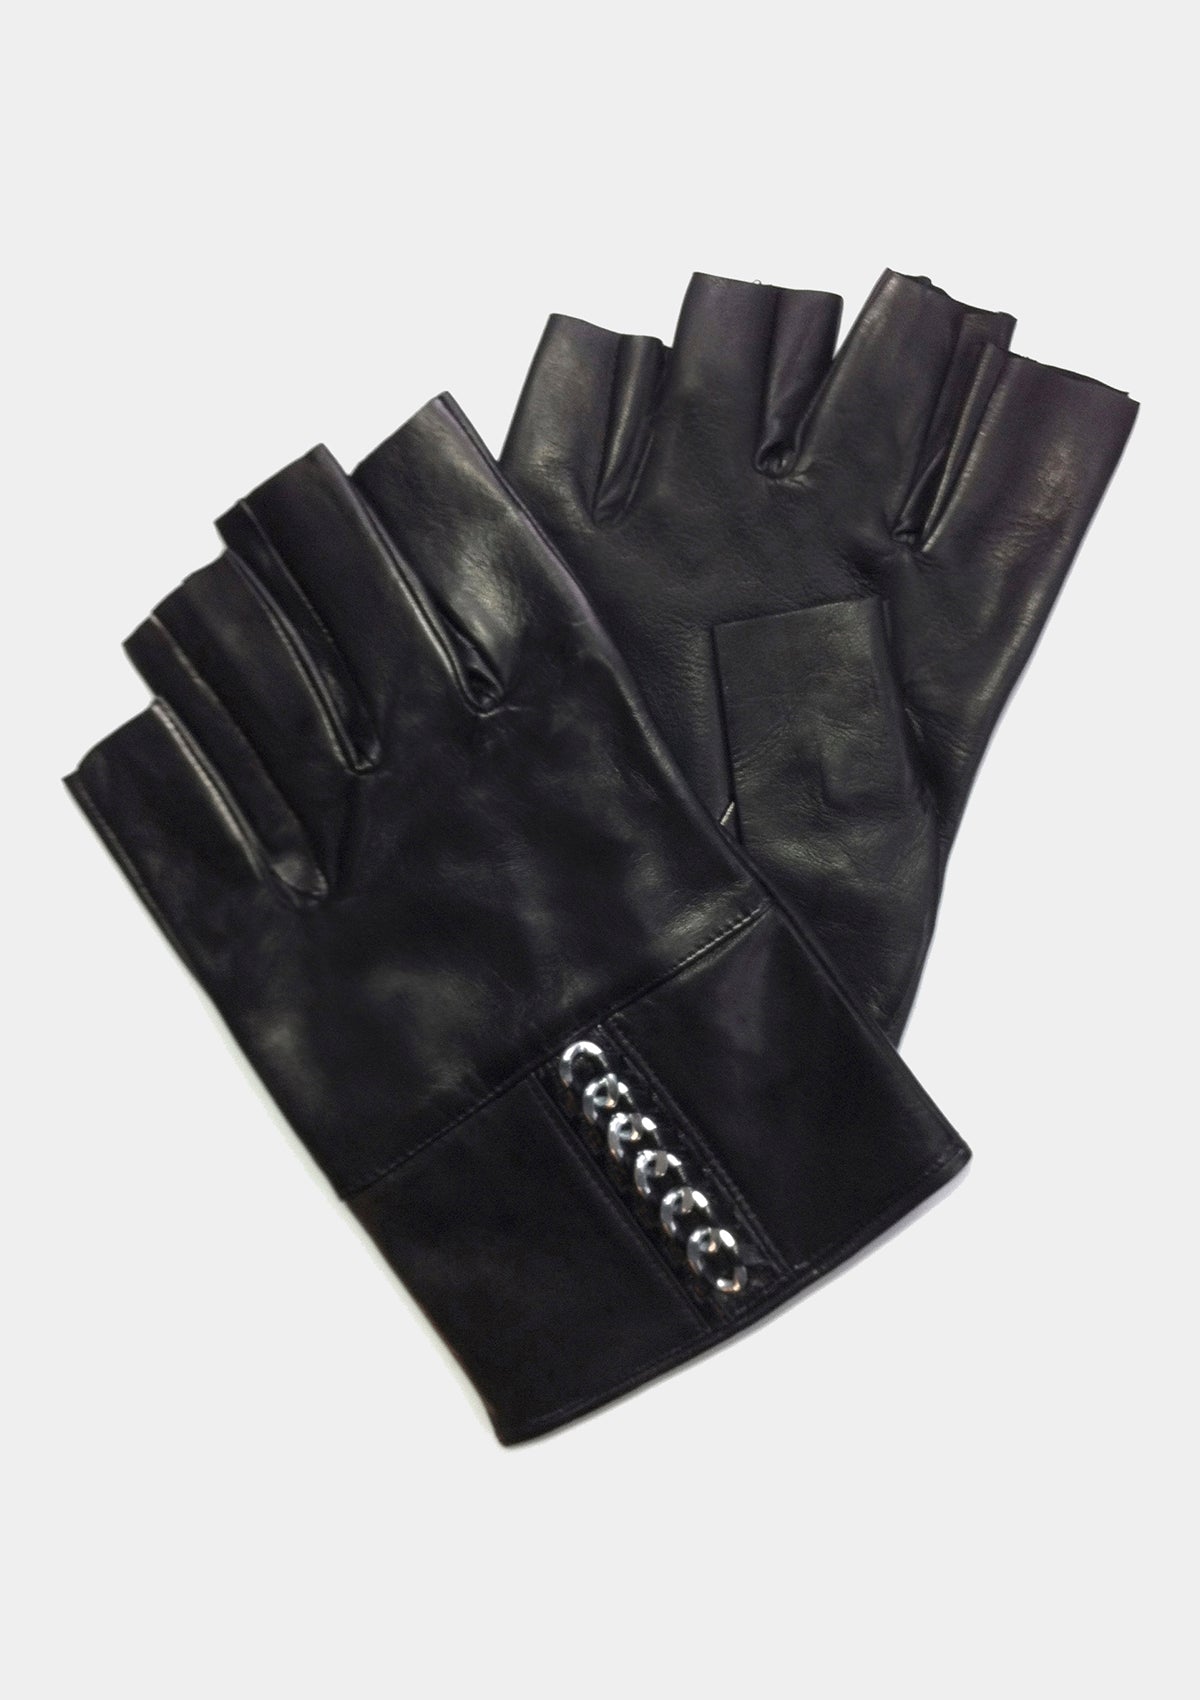 Fingerless leather chain black stud gloves for men